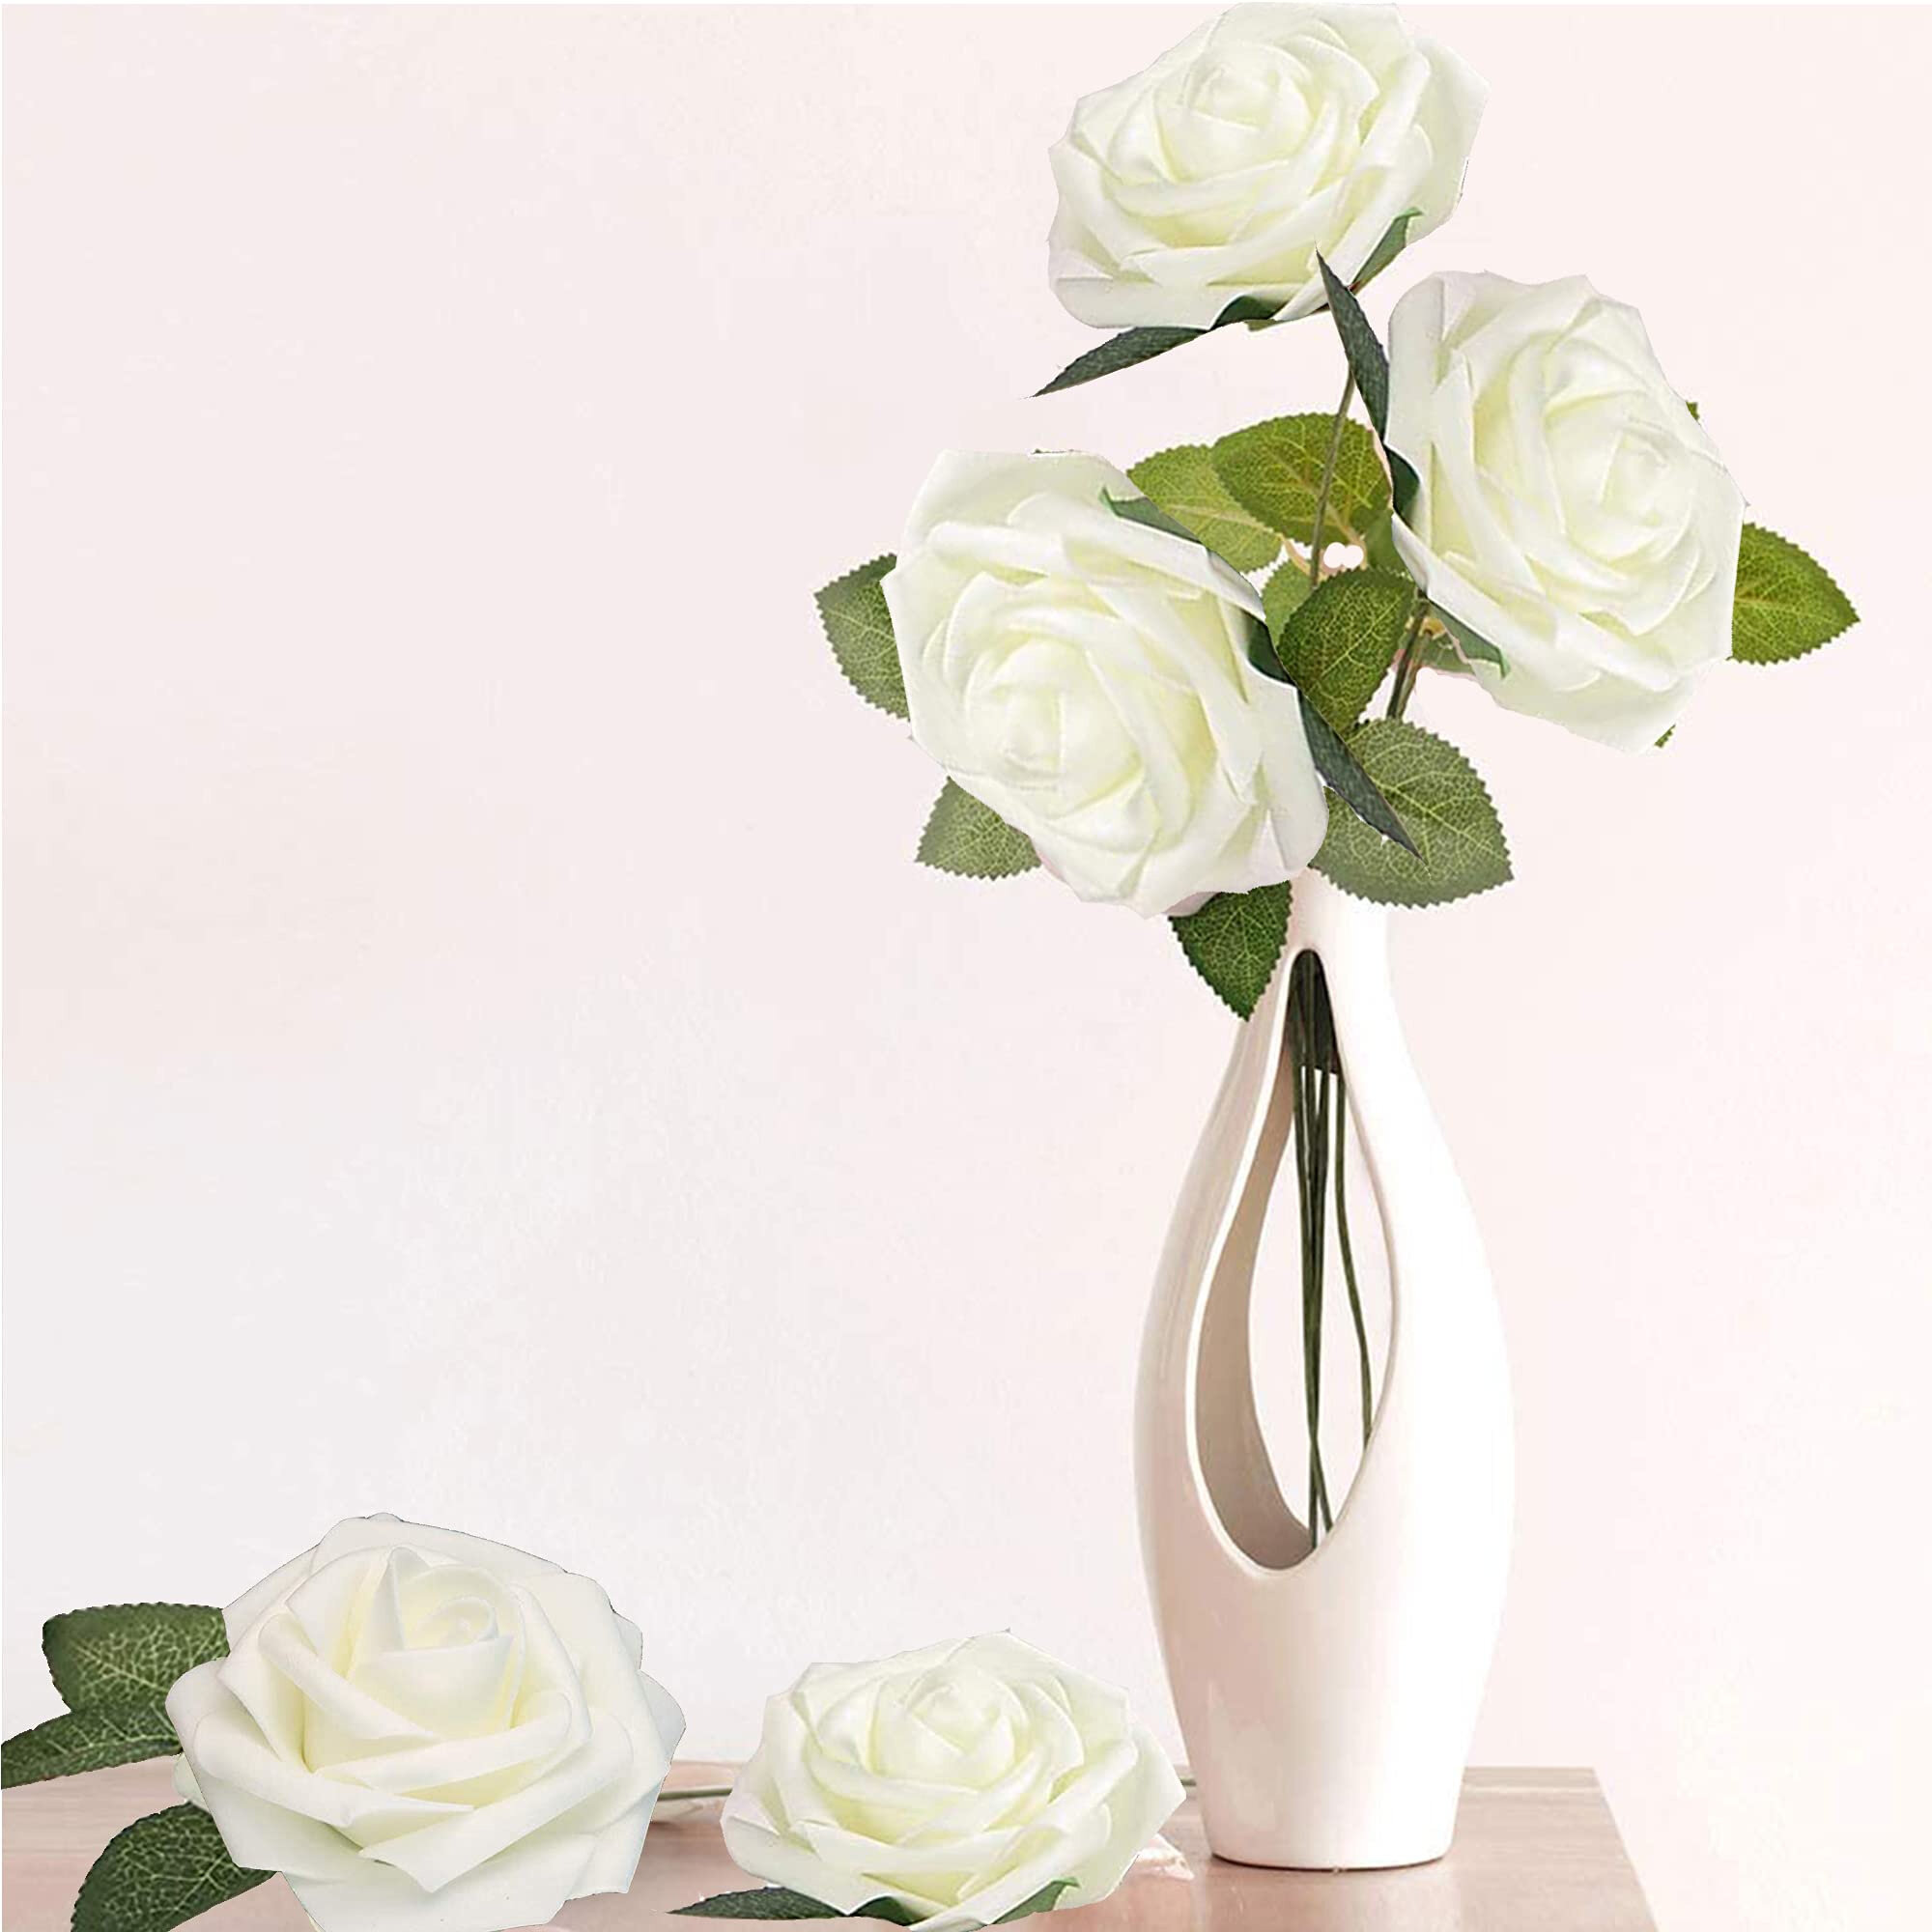 50pcs Artificial Flowers Foam Roses with stem Wedding Bride Bouquet Party Decor.